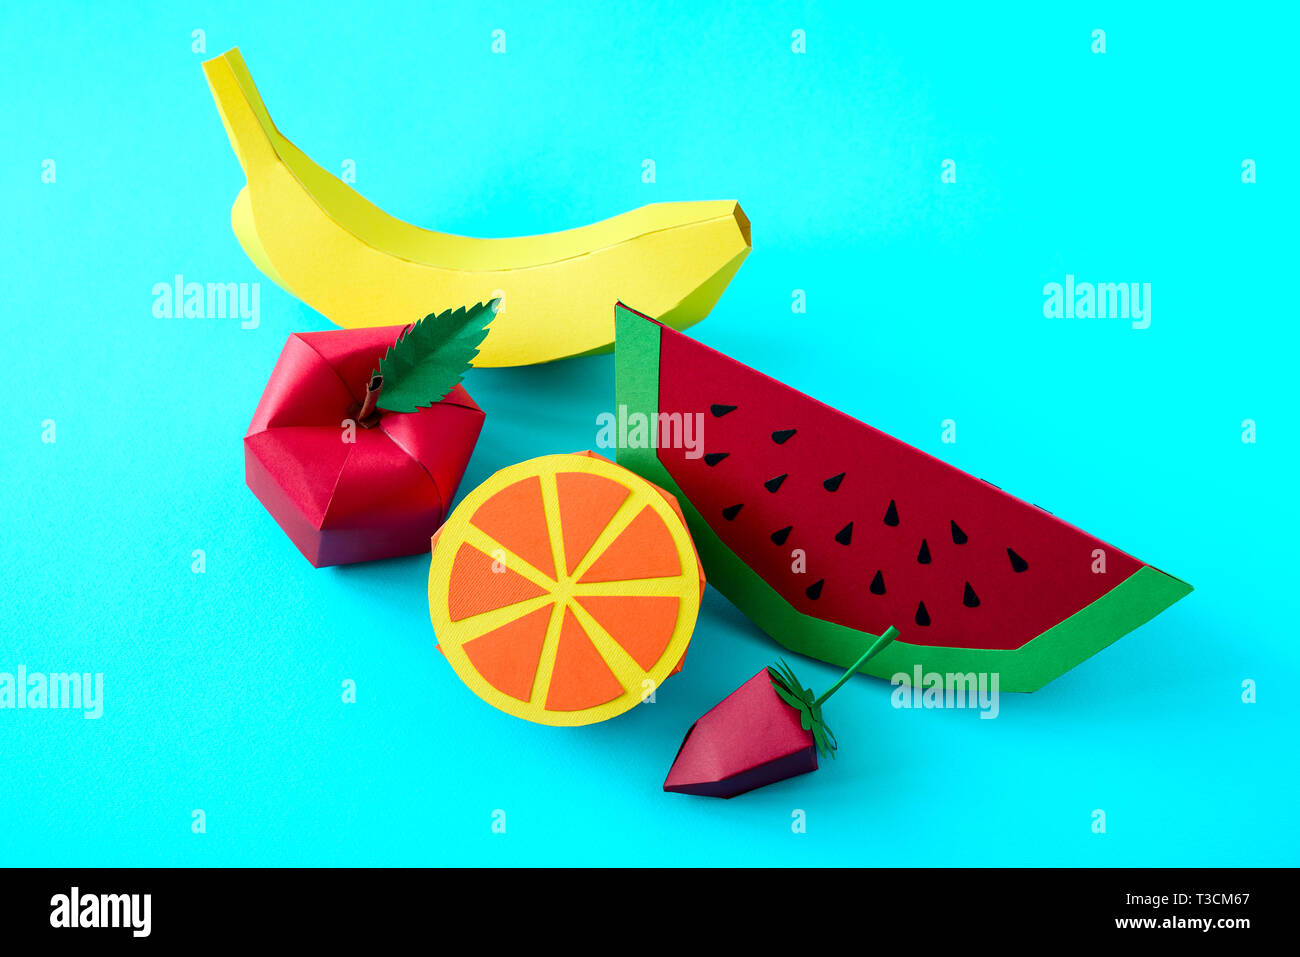 Apple, fragola, banana, arancione e il cocomero costituito da carta su sfondo blu. Frutta fresca. Il minimo, creative vegan, sano o arte cibo conce Foto Stock